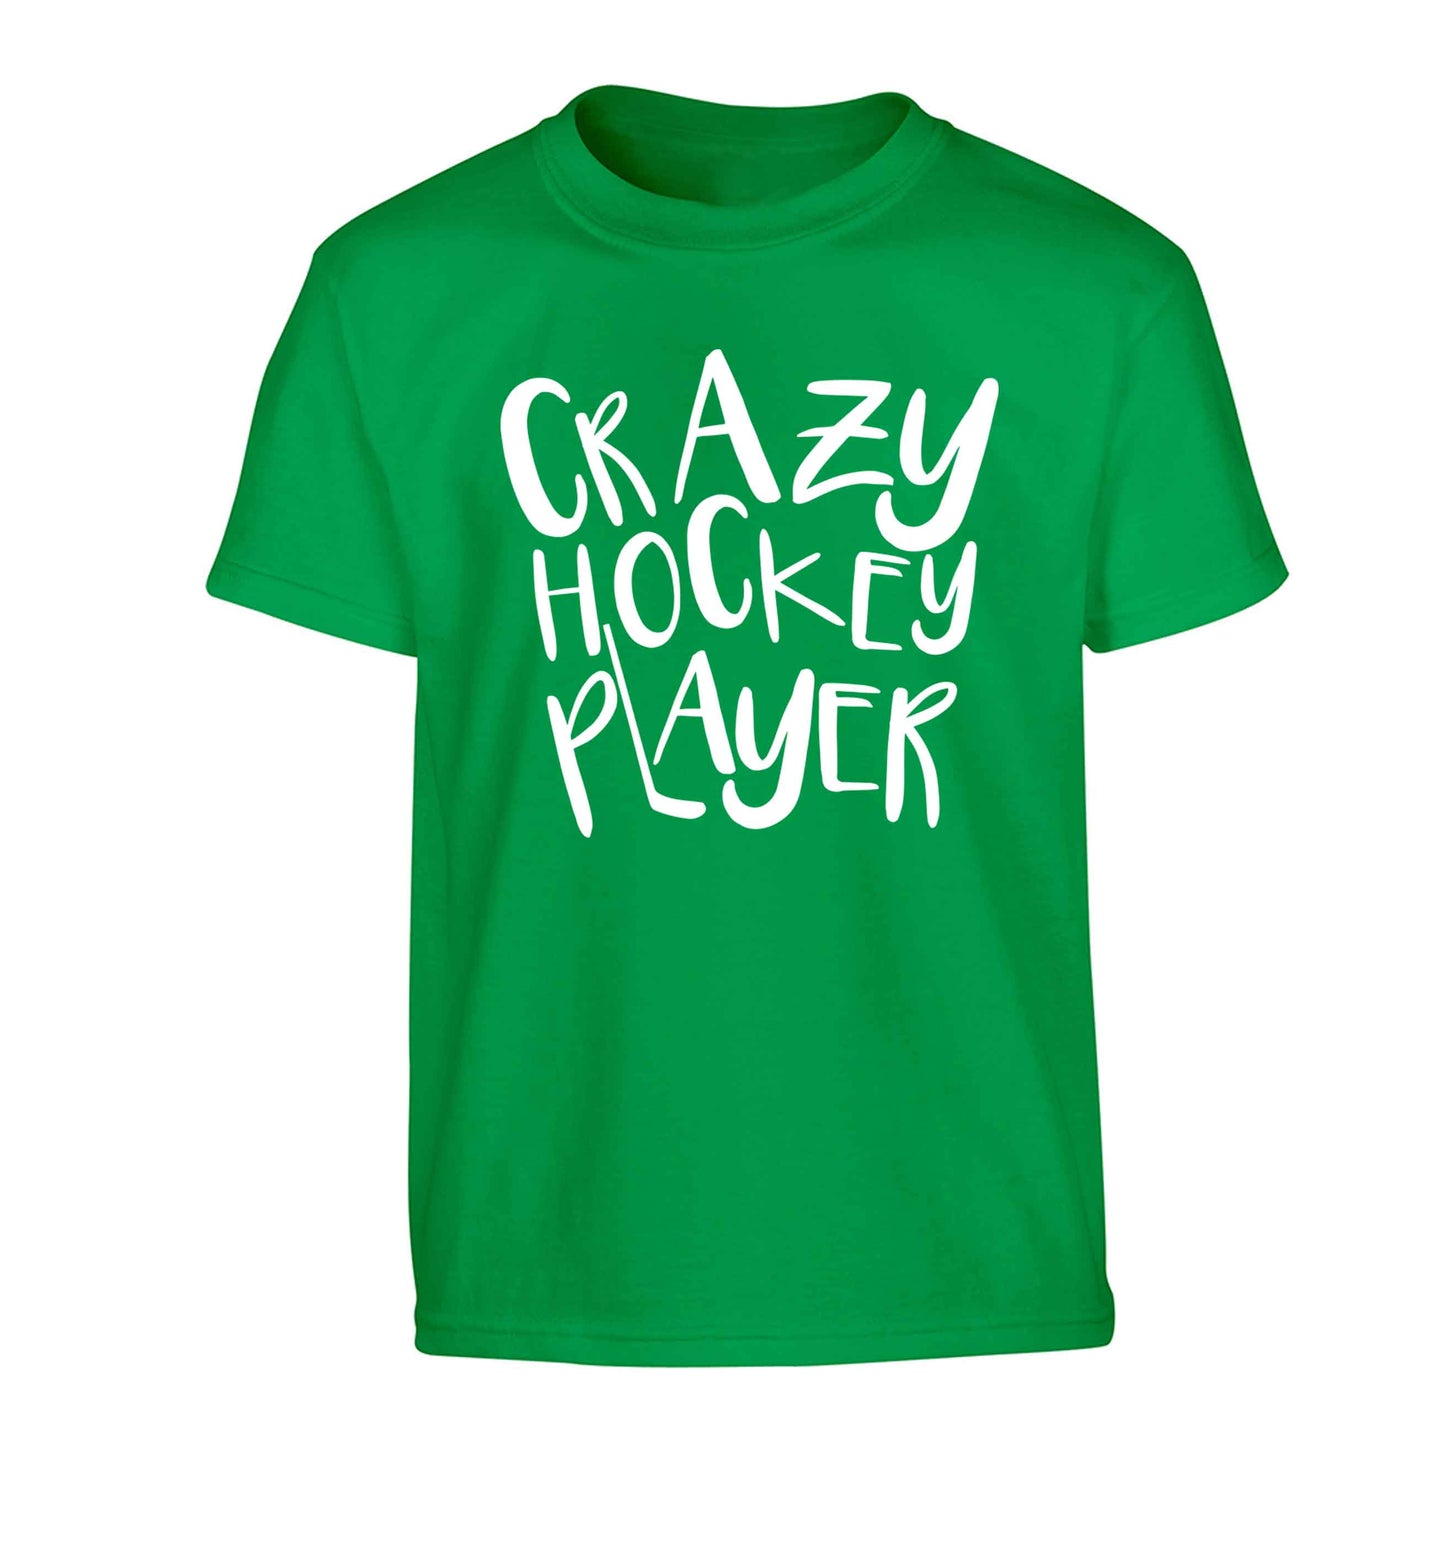 Crazy hockey player Children's green Tshirt 12-13 Years